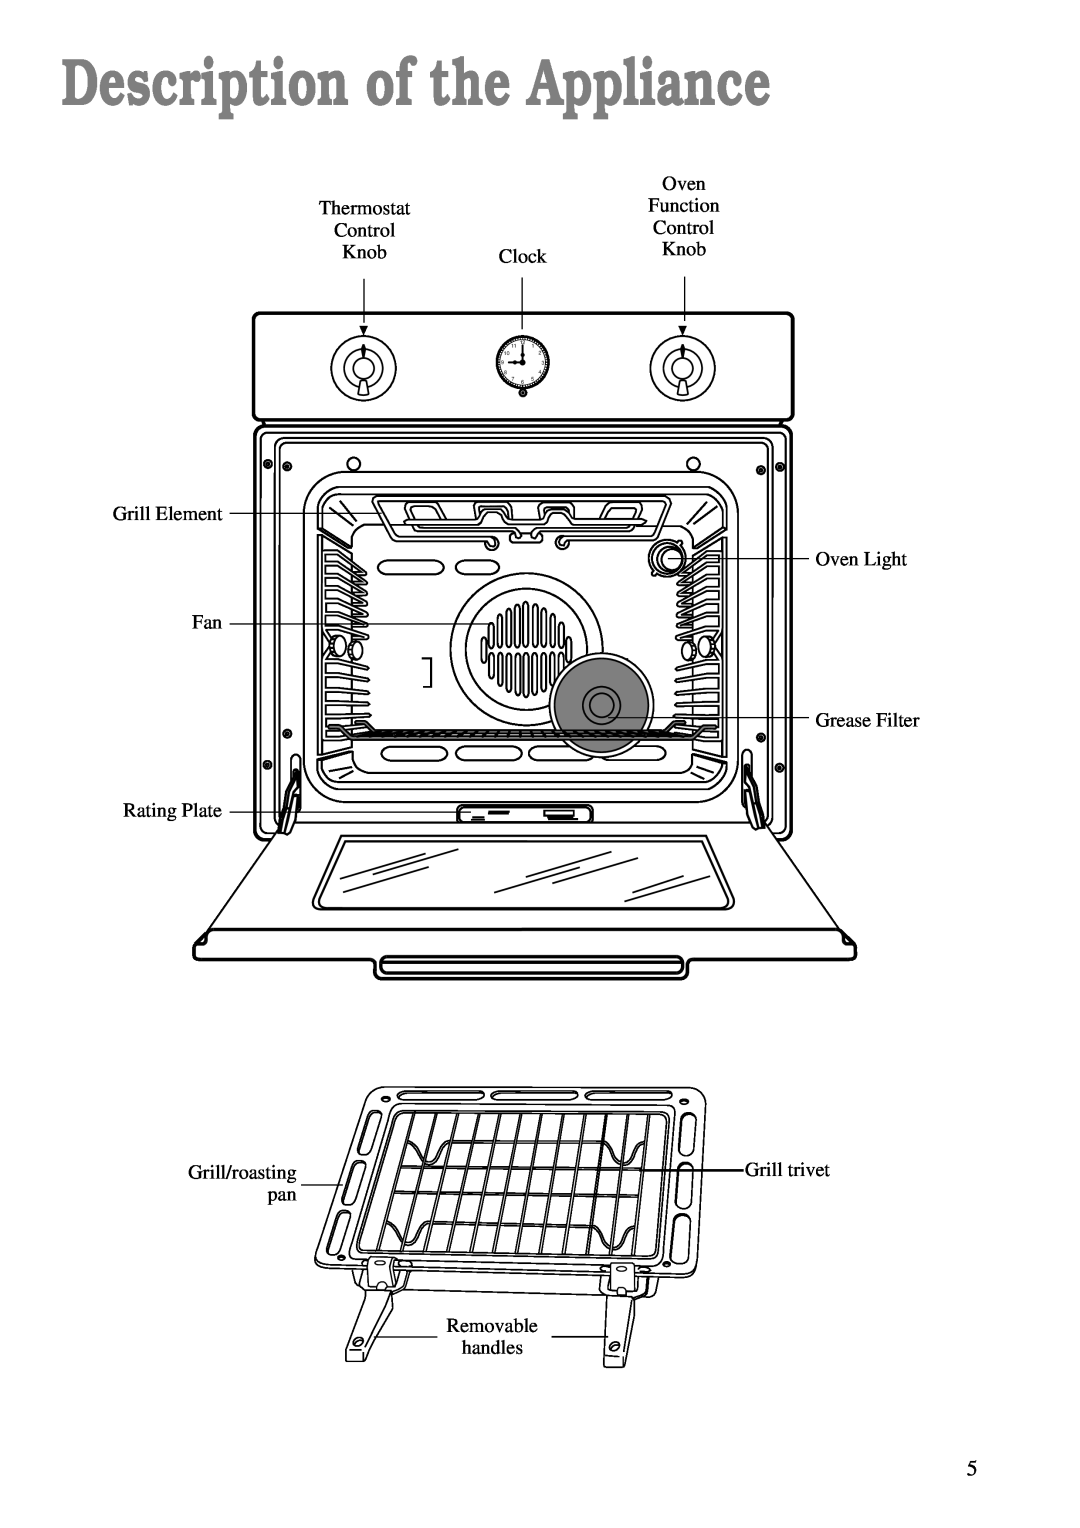 Zanussi ZBC 748 installation manual Description of the Appliance, Oven 